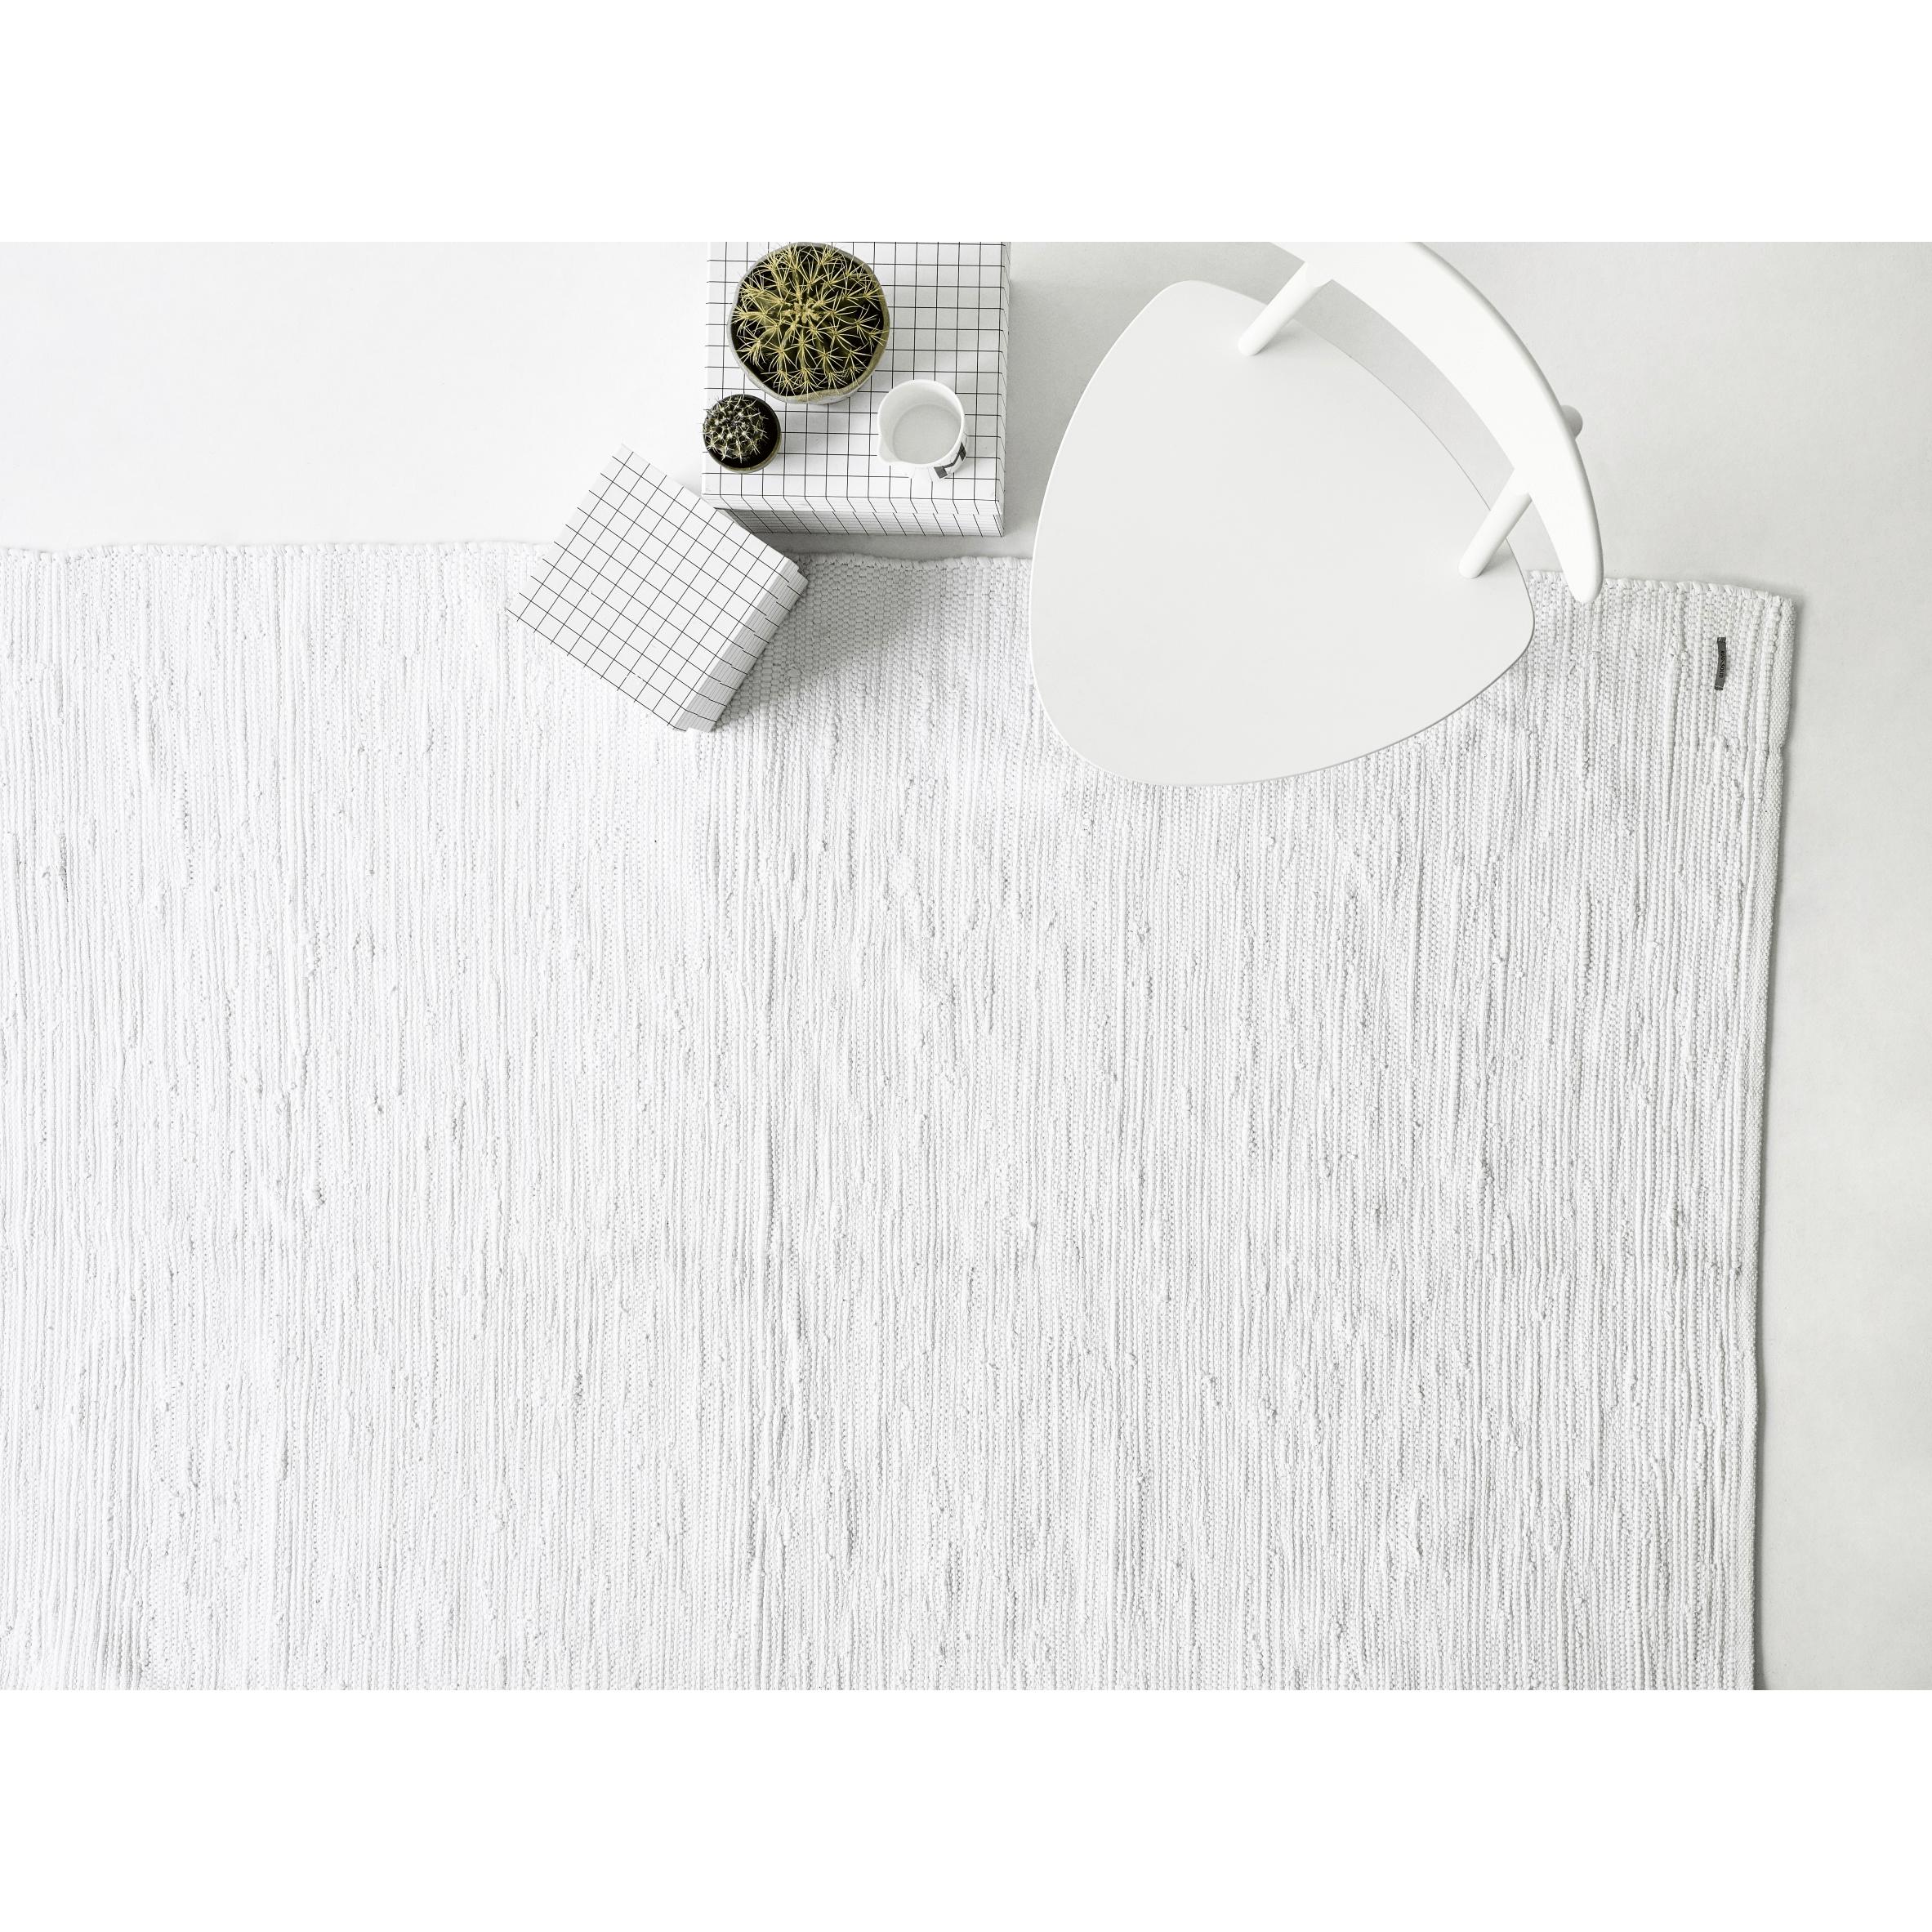 Tappeto di cotone solido bianco, 170 x 240 cm